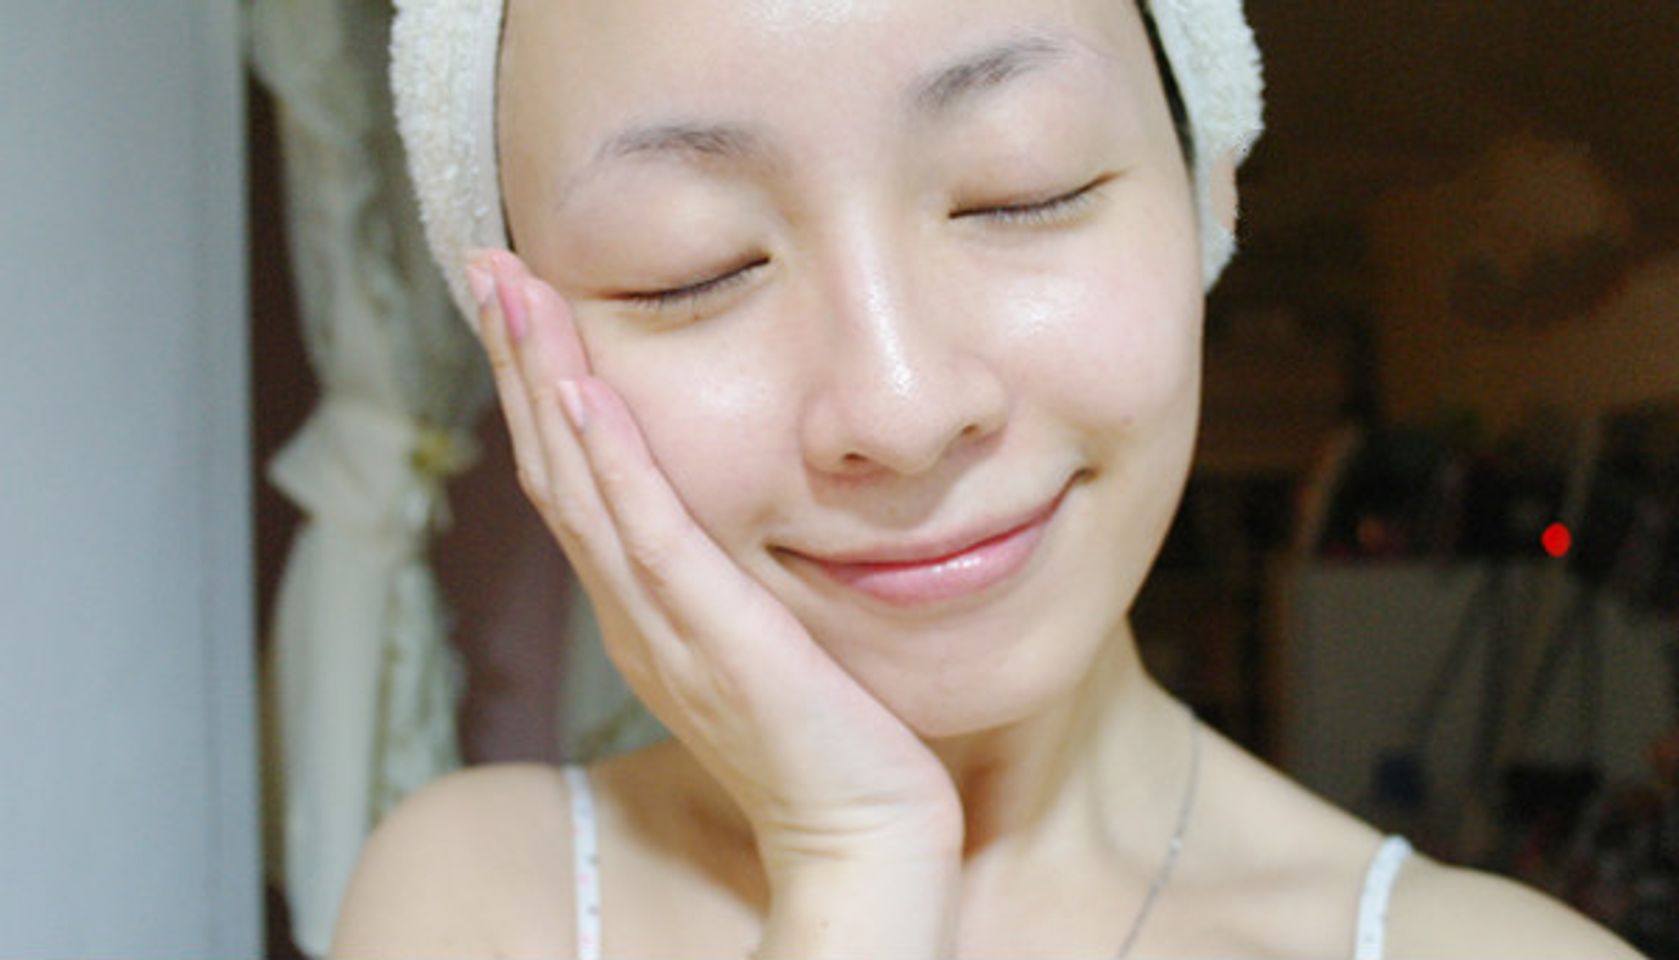 Mặt nạ White Pack Ishizawa hỗ trợ điều trị lành vết thương trên bề mặt da, da bạn sẽ căng tràn sức sống, căng bóng, sáng mịn